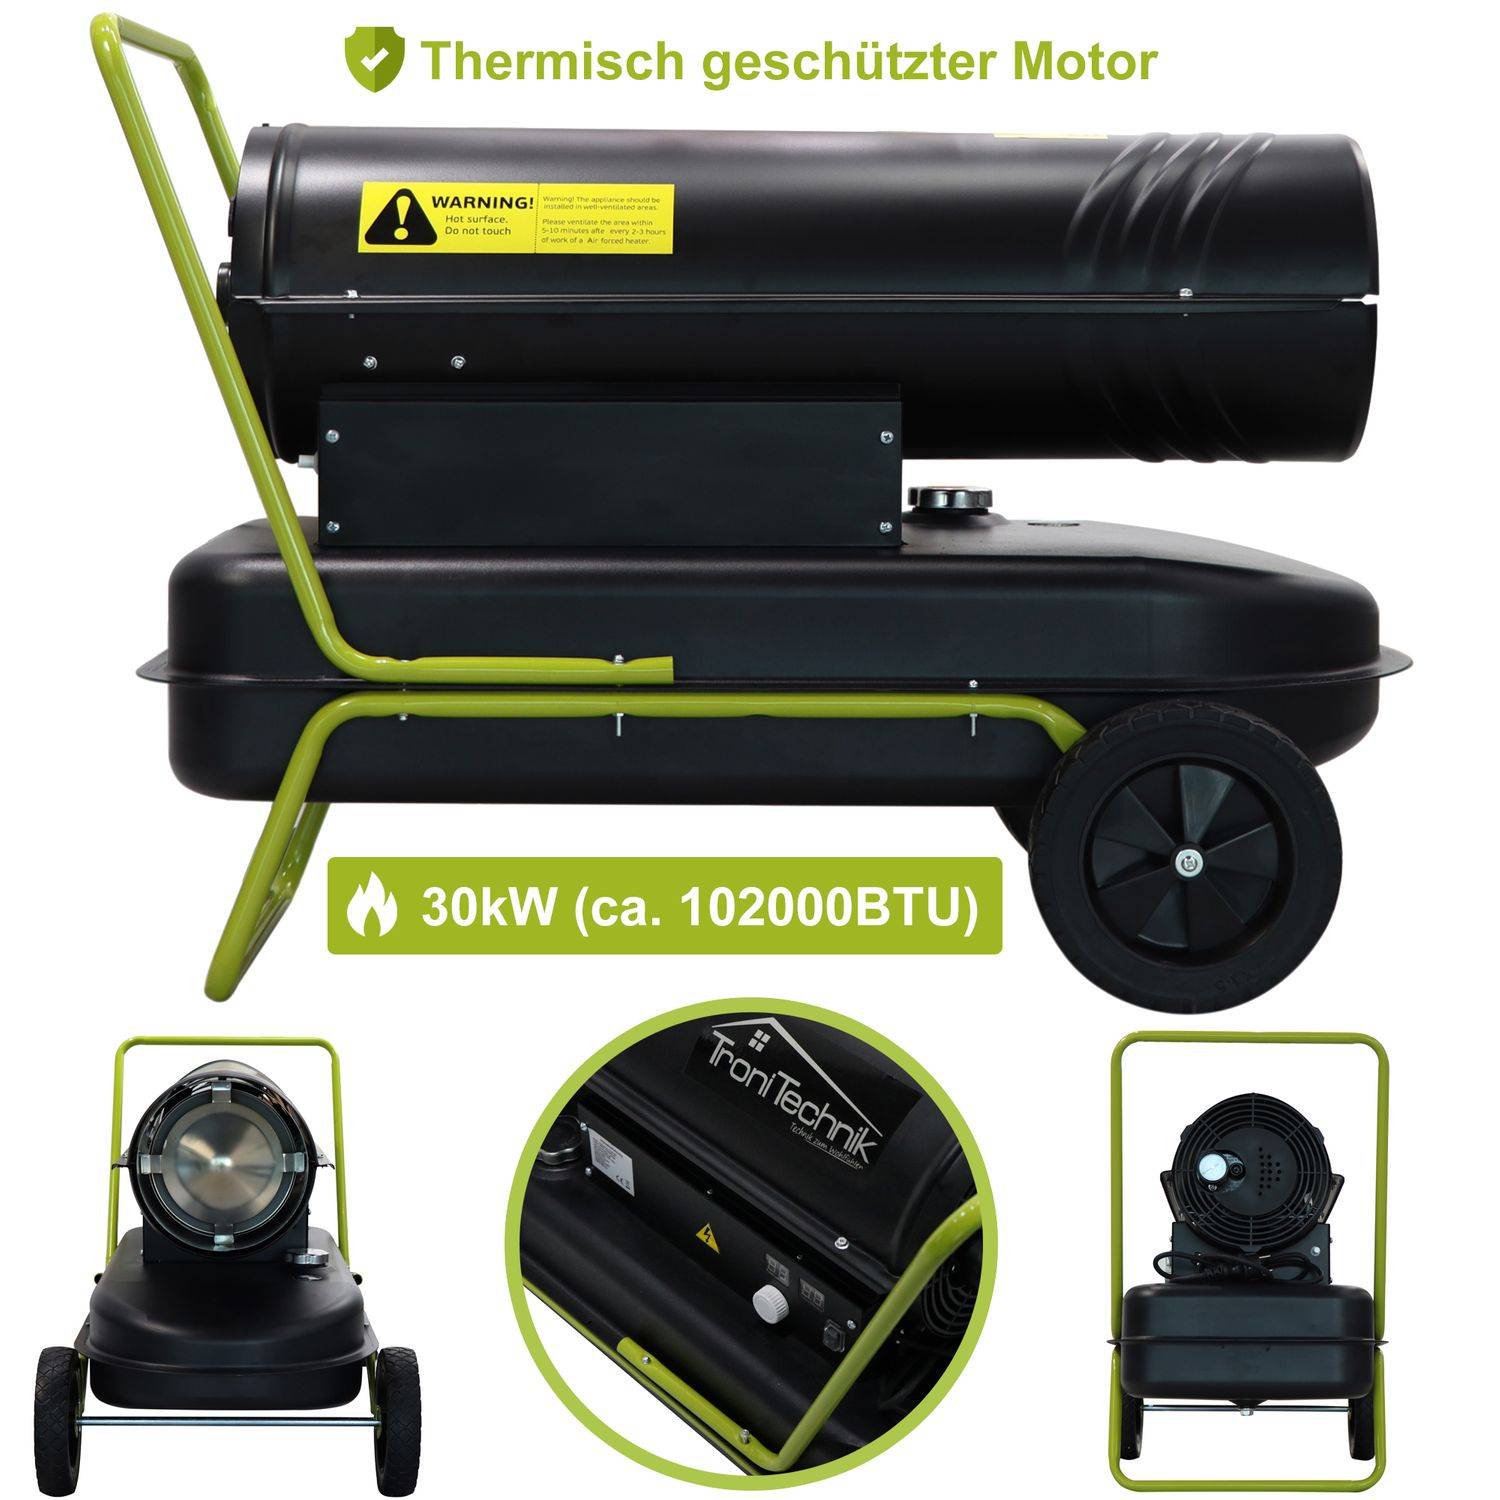 Tronitechnik TT-HK-245 Diesel-Heizkanone 30kW ab 639,00 €